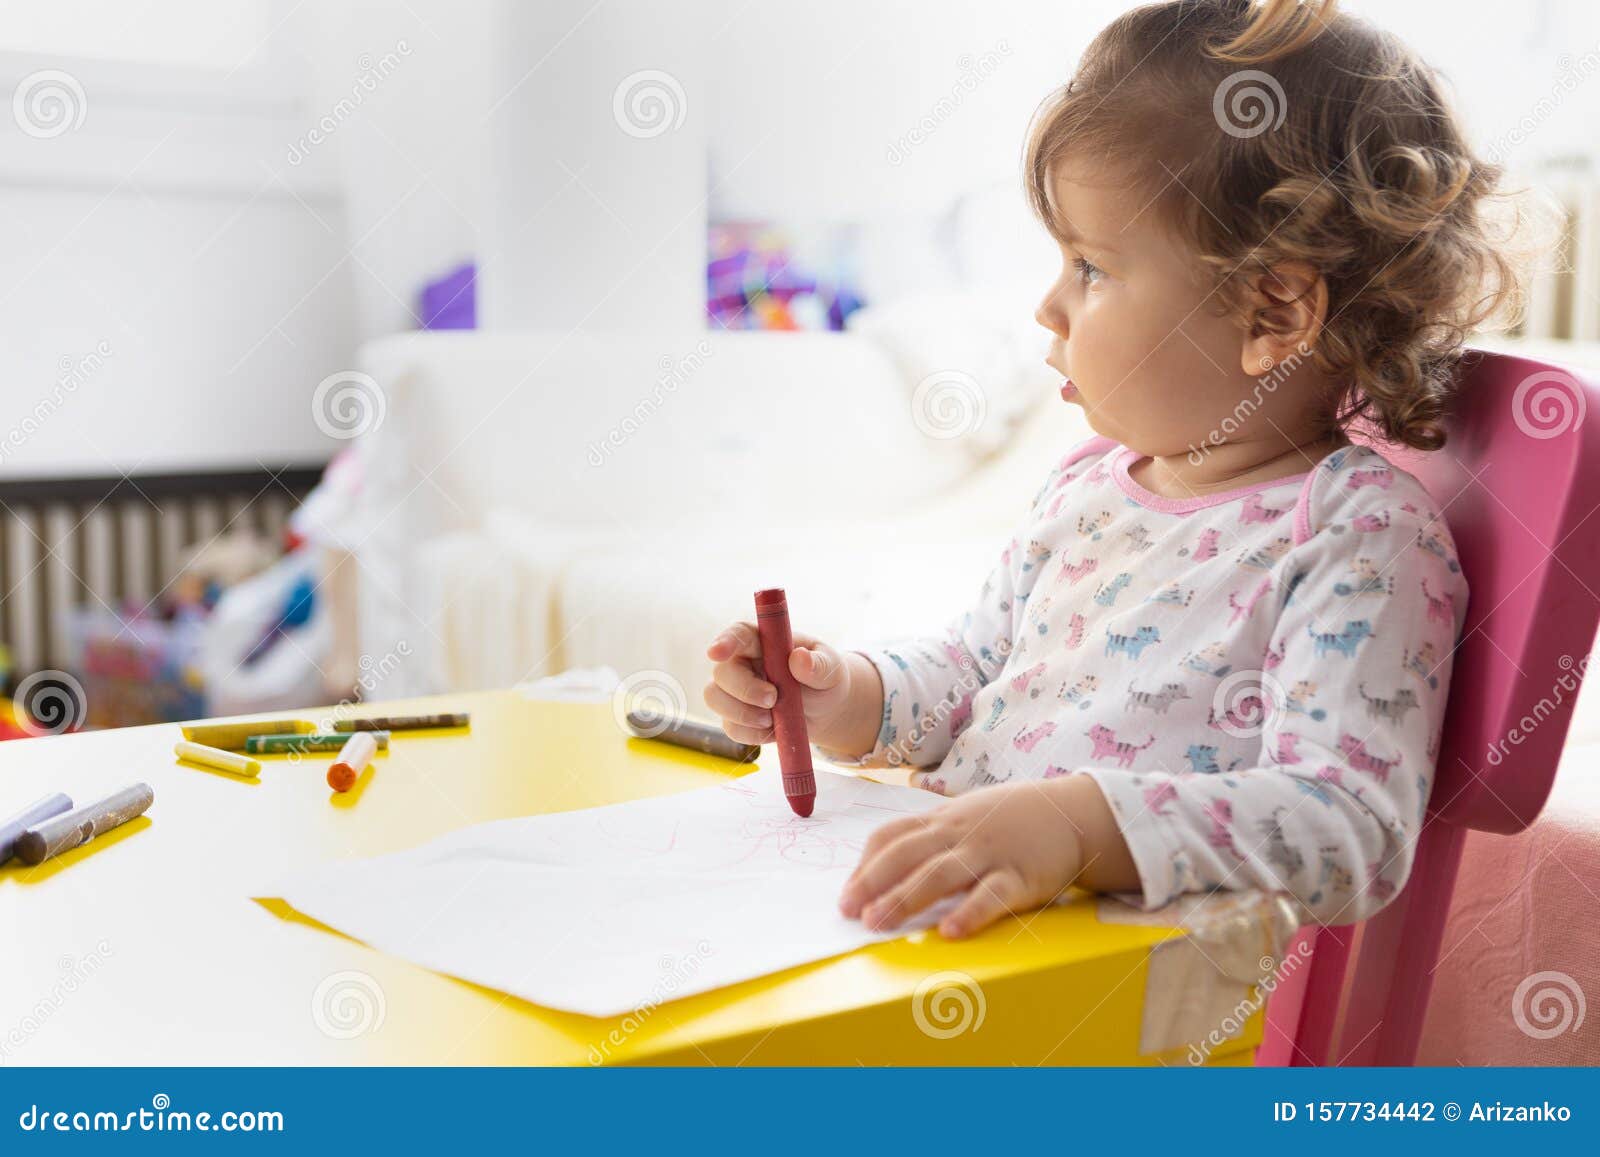 纸画蜡笔的幼女库存照片 图片包括有纸画蜡笔的幼女